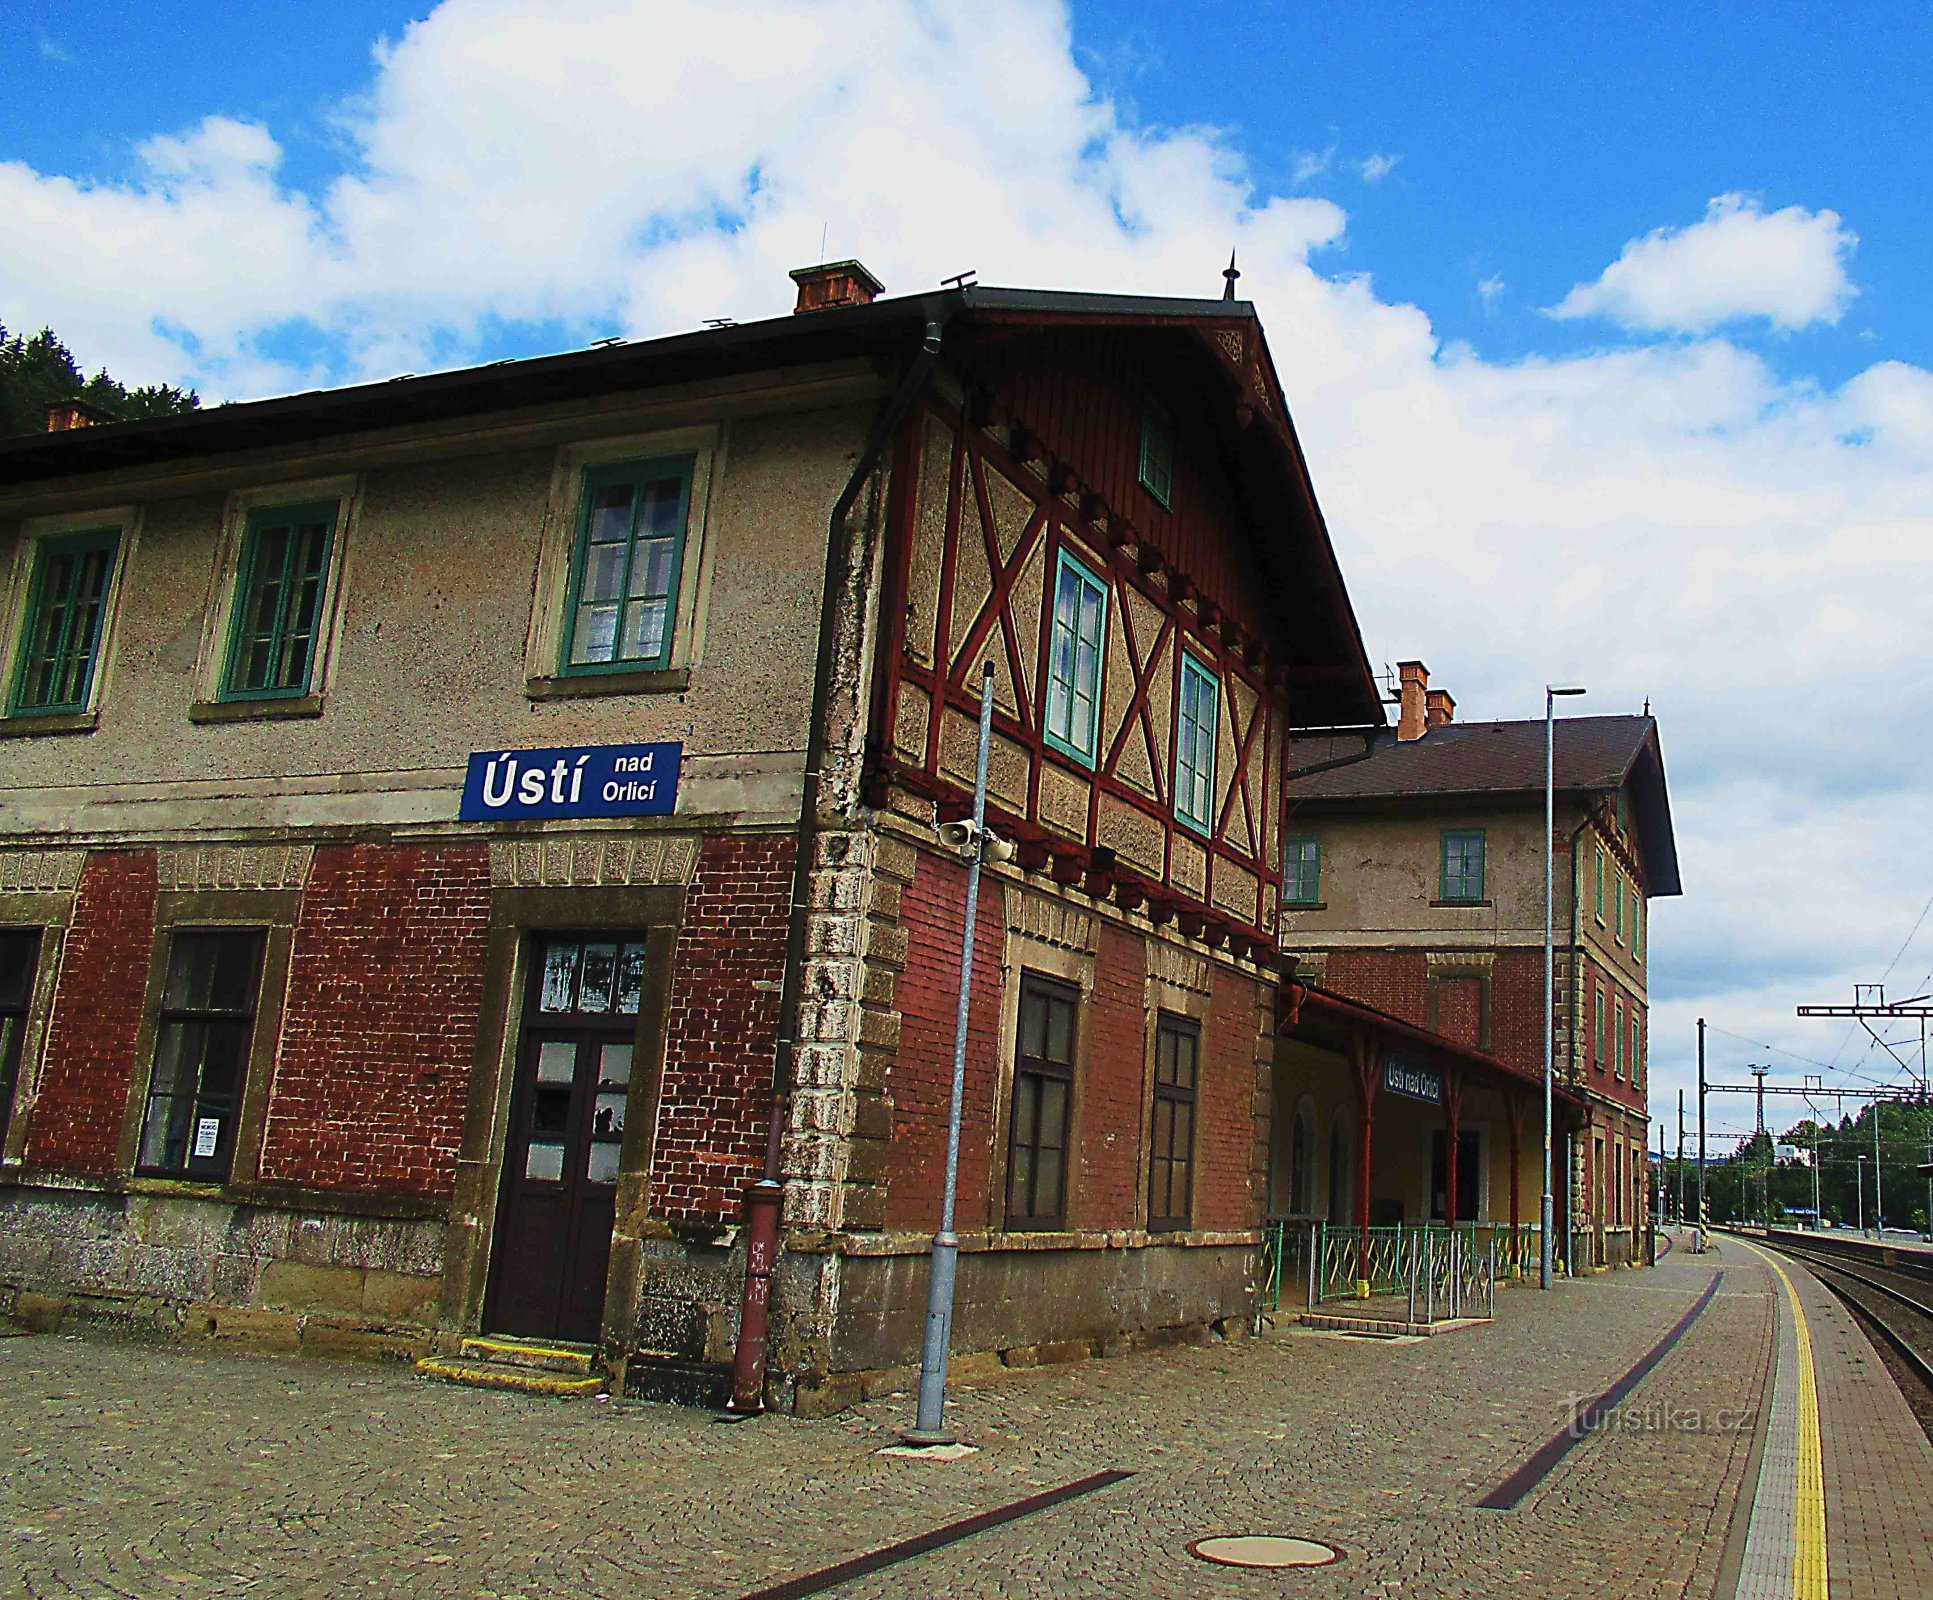 ウスティ・ナド・オルリシ駅の歴史的建造物